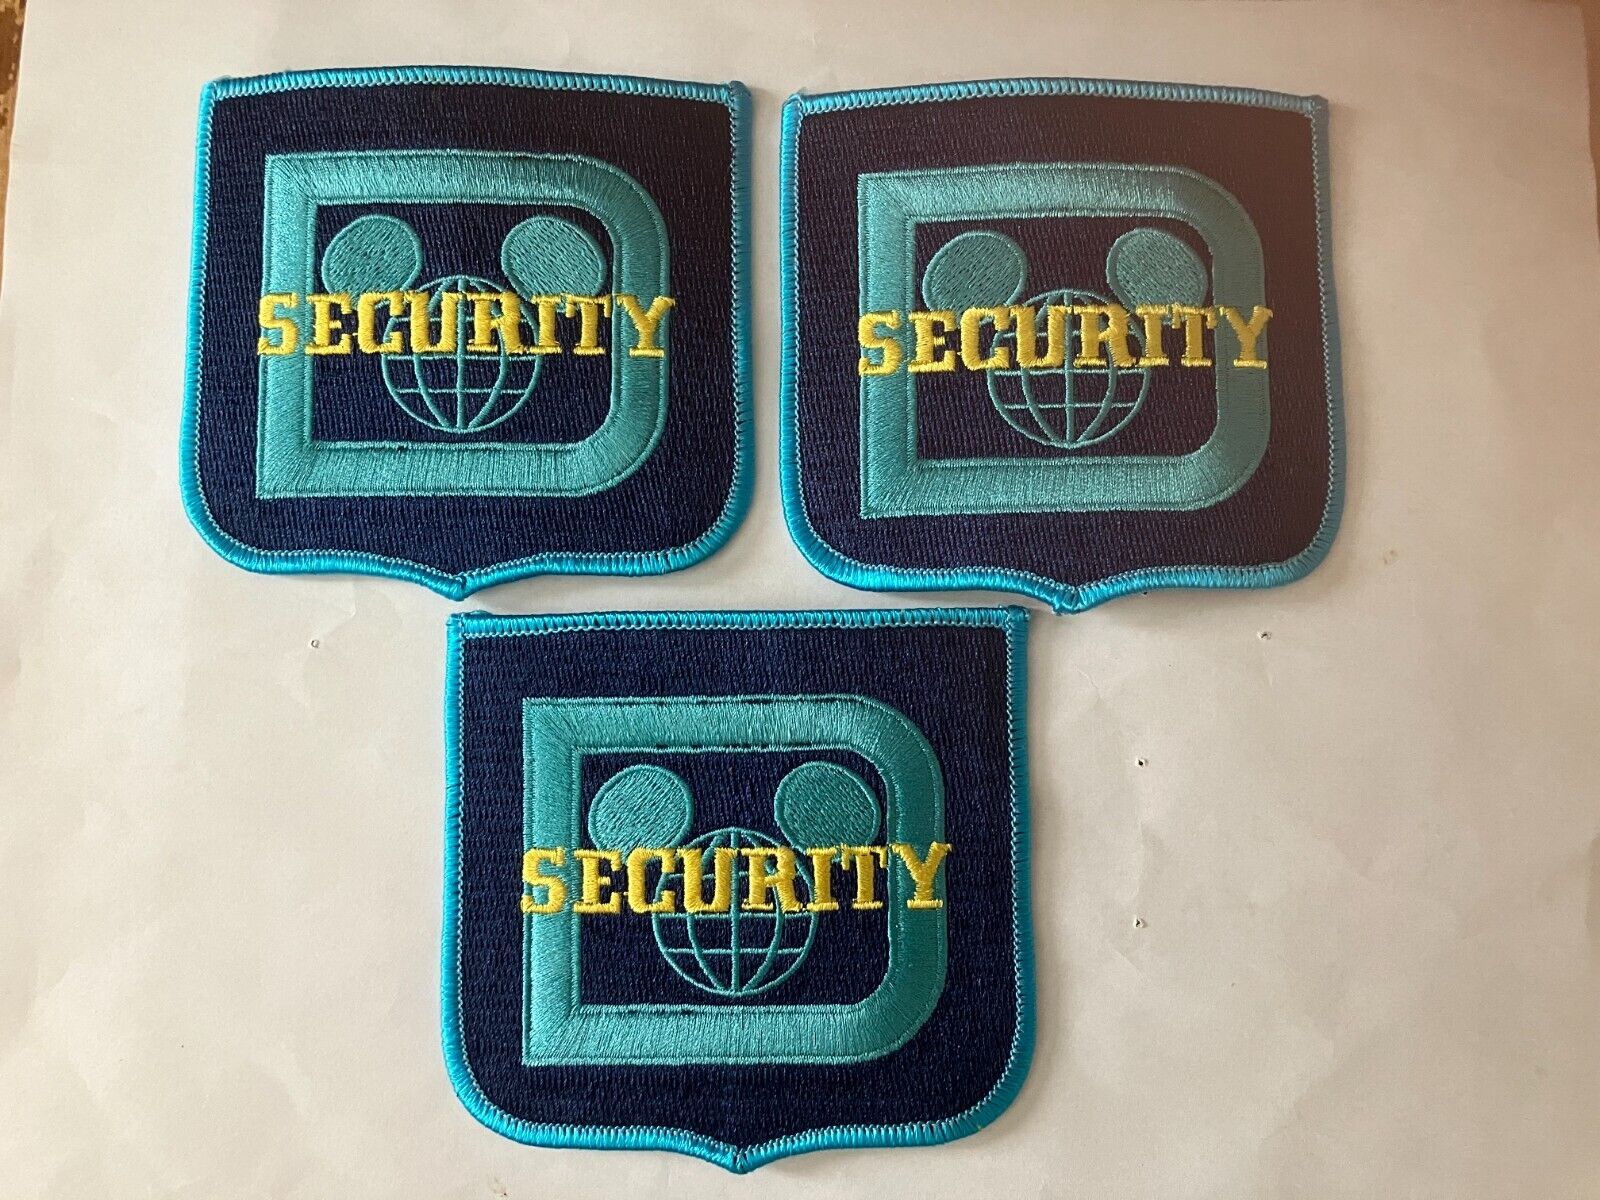 Walt Disney classic logo cast member exclusive security uniform patches